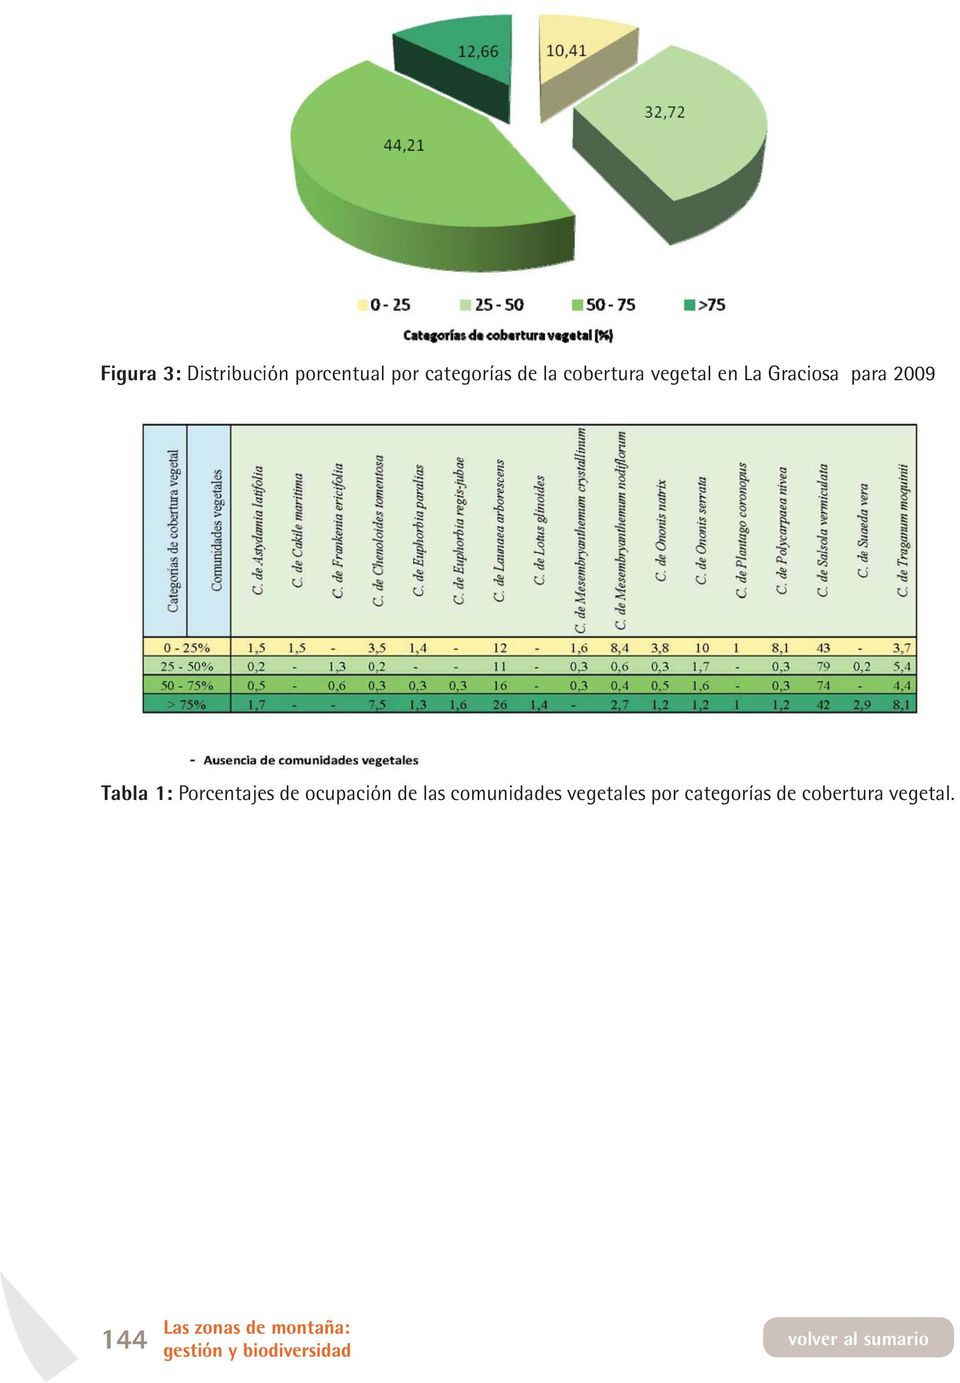 Porcentajes de ocupación de las comunidades vegetales por